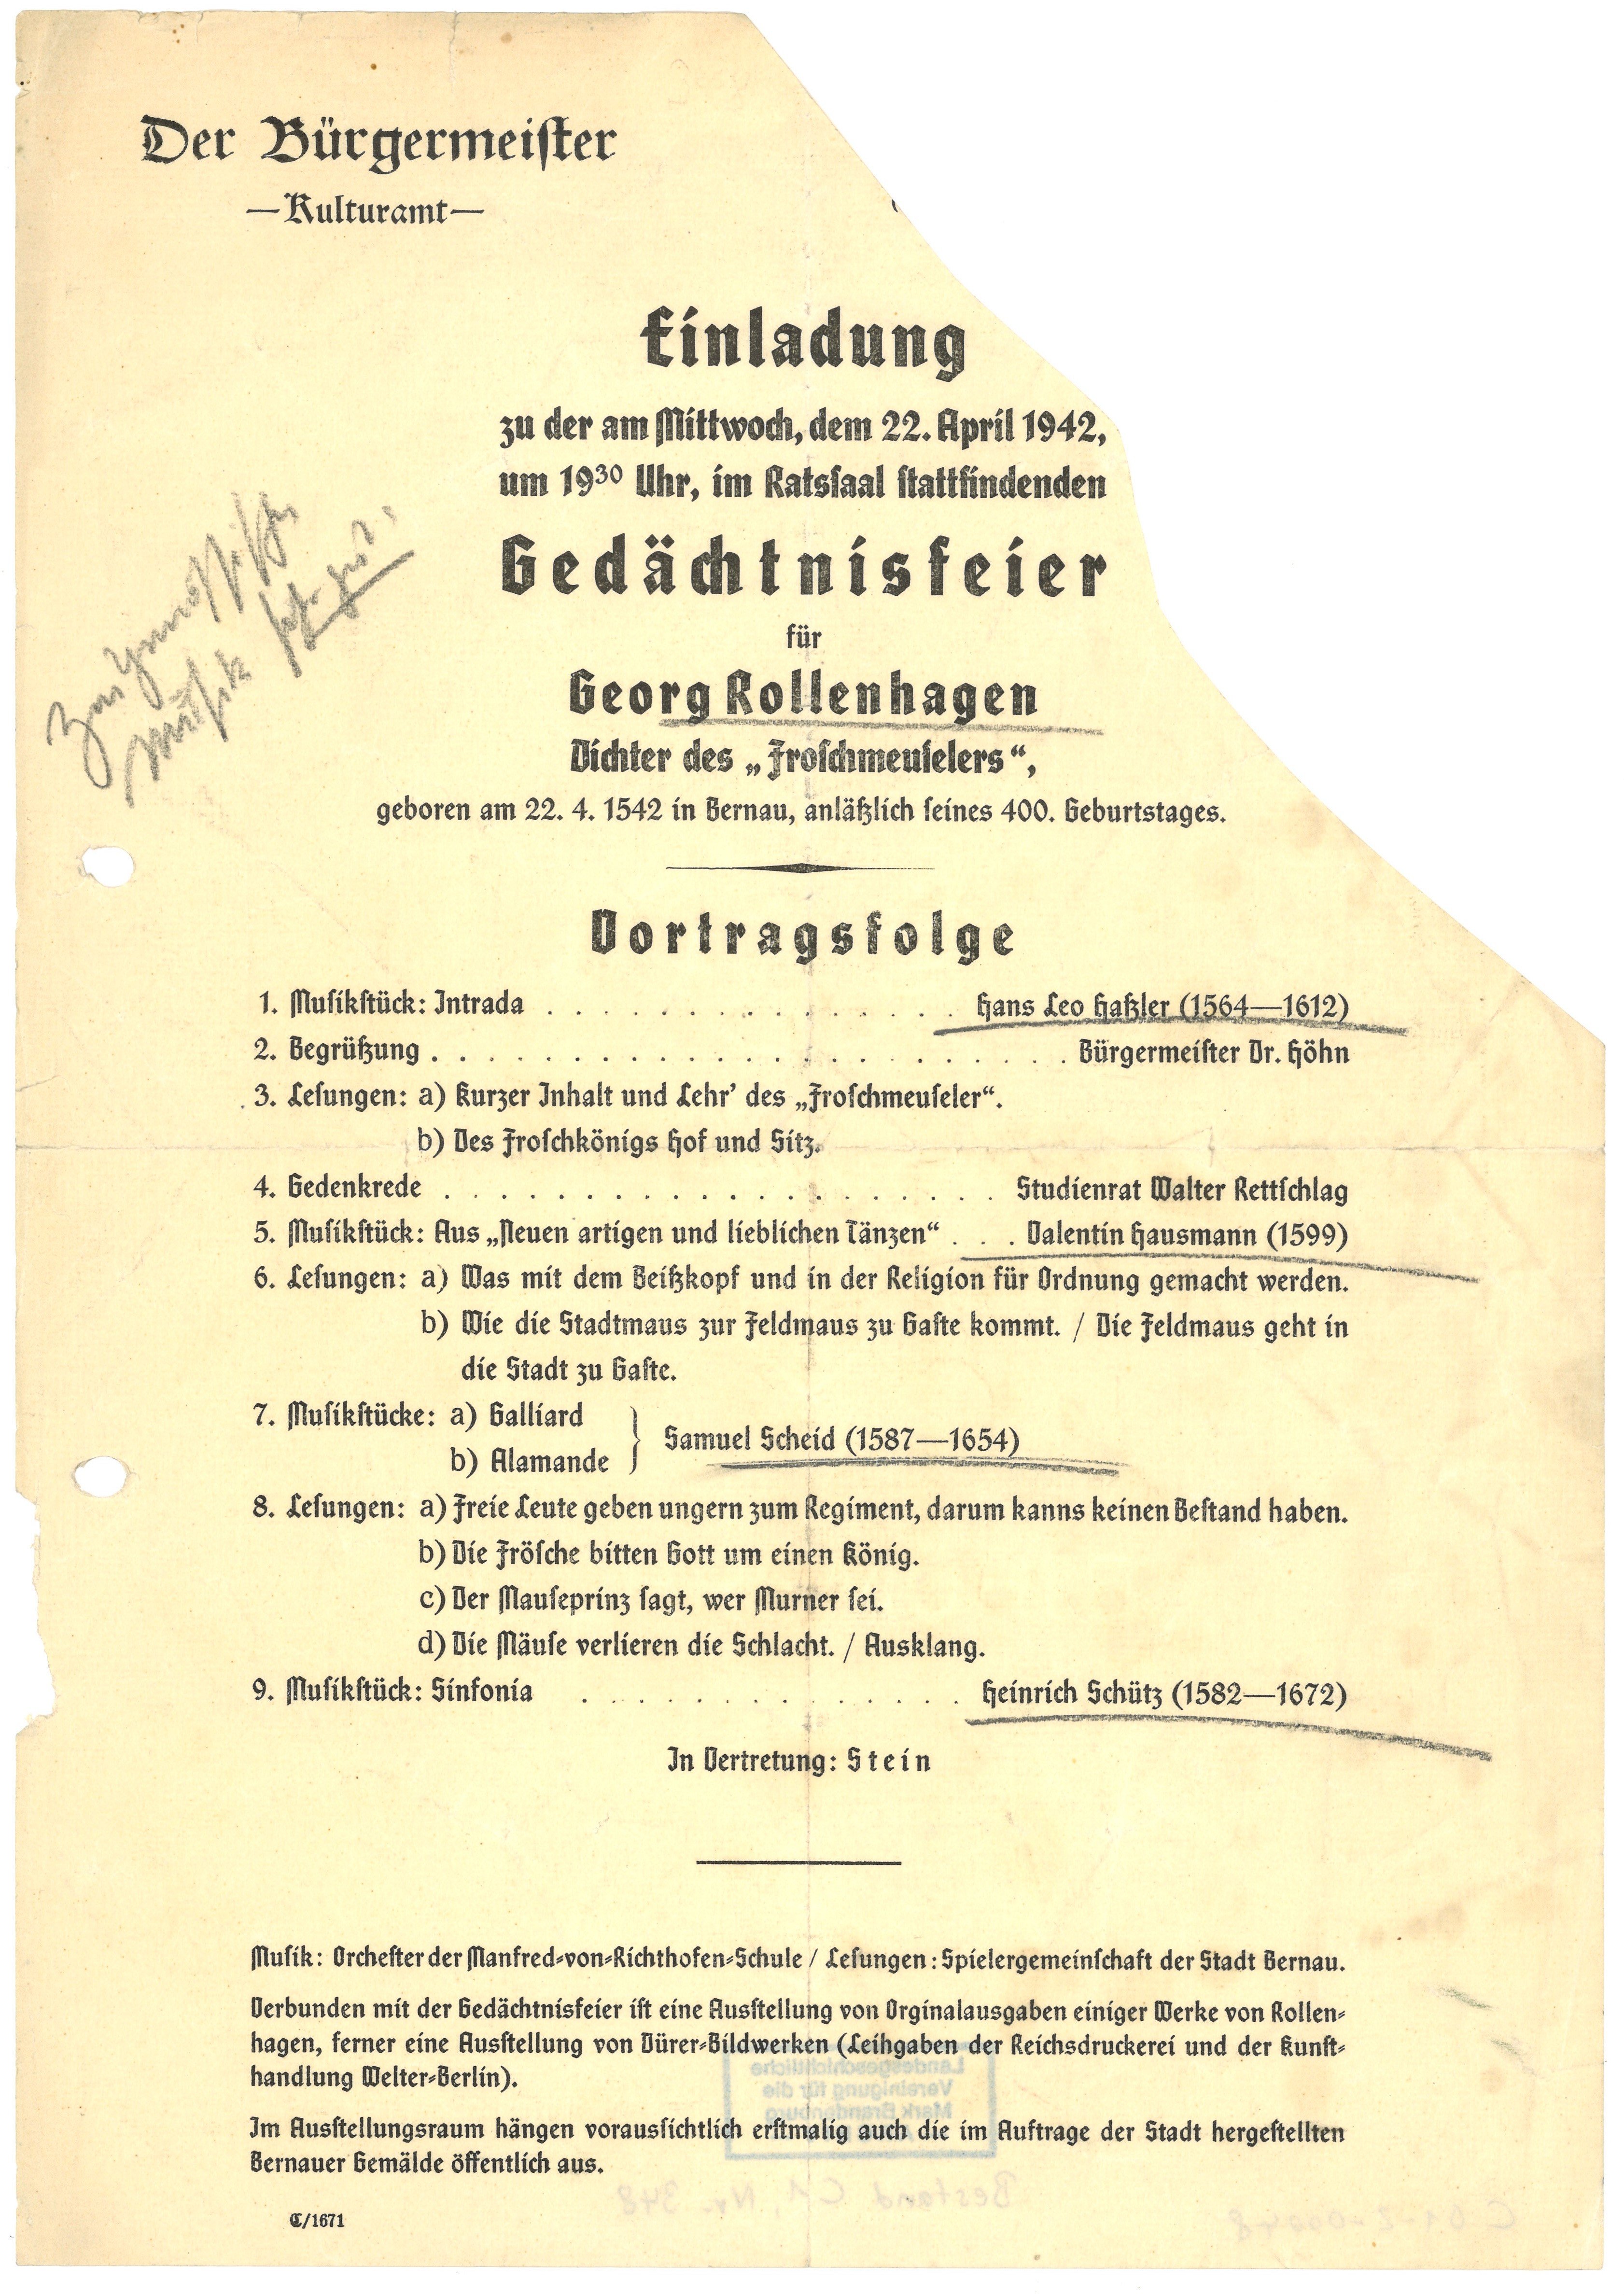 Einladung und Programm zur Gedächtnisfeier für Georg Rollenhagen in Bernau 1942 (Landesgeschichtliche Vereinigung für die Mark Brandenburg e.V., Archiv CC BY)